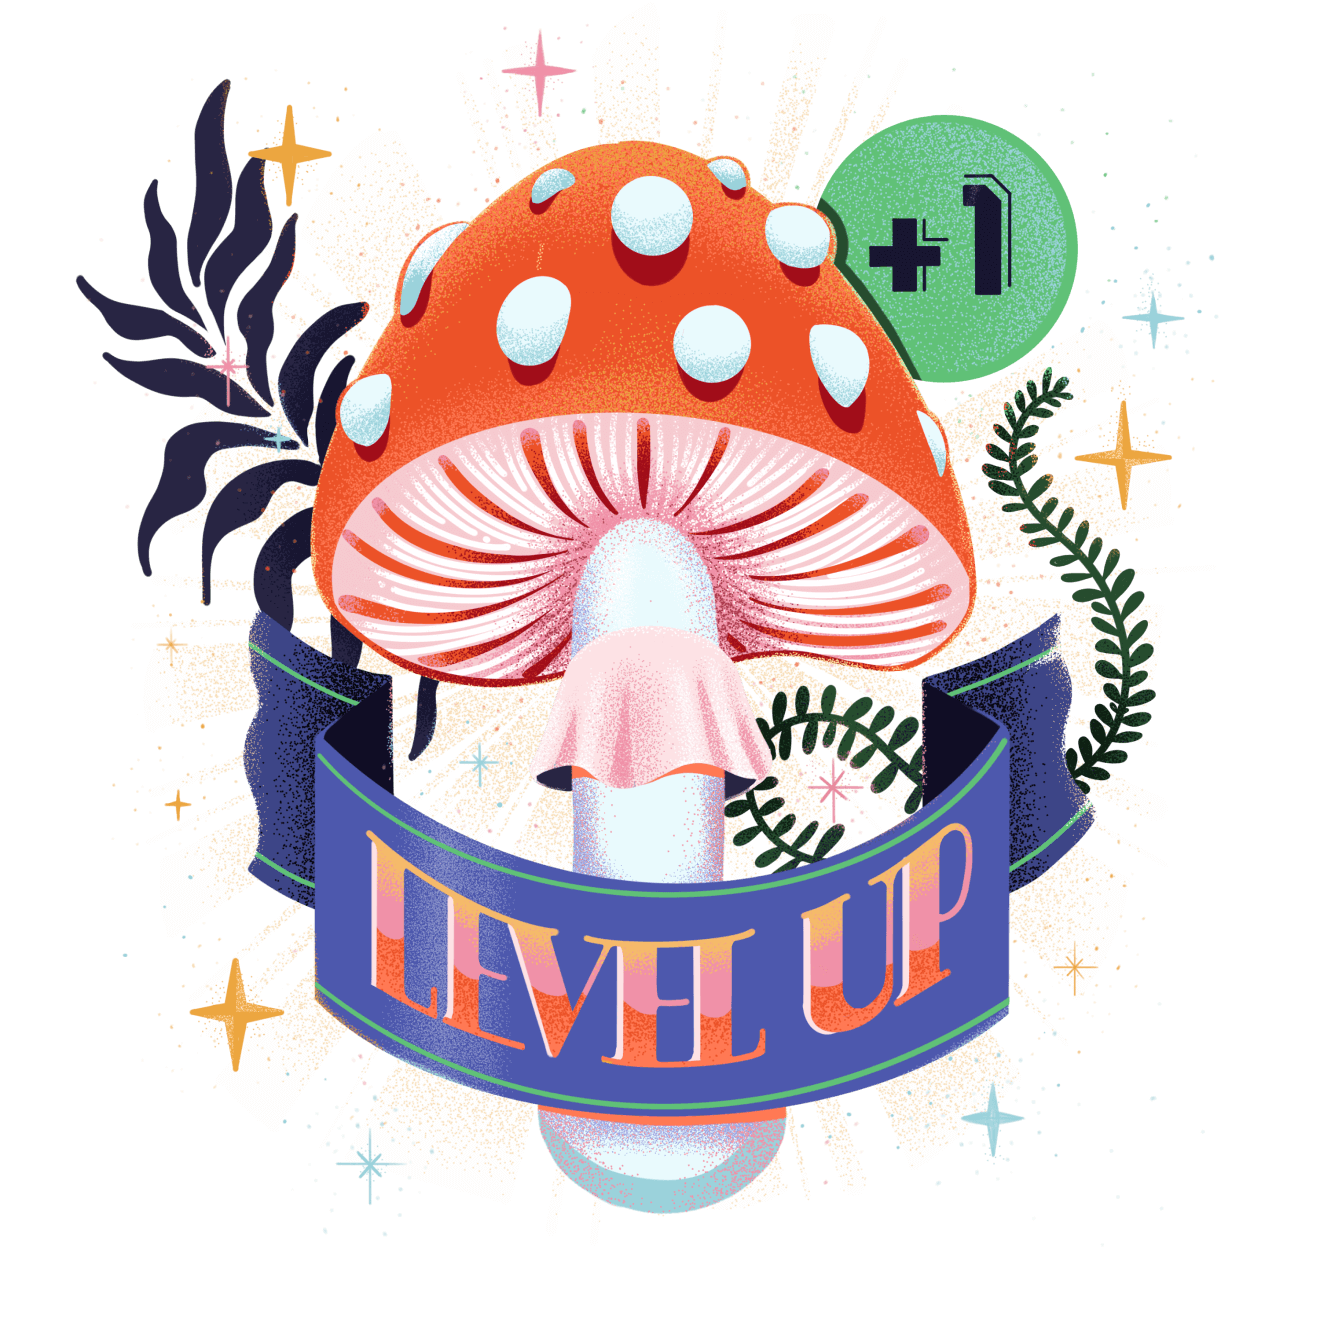 a mushroom